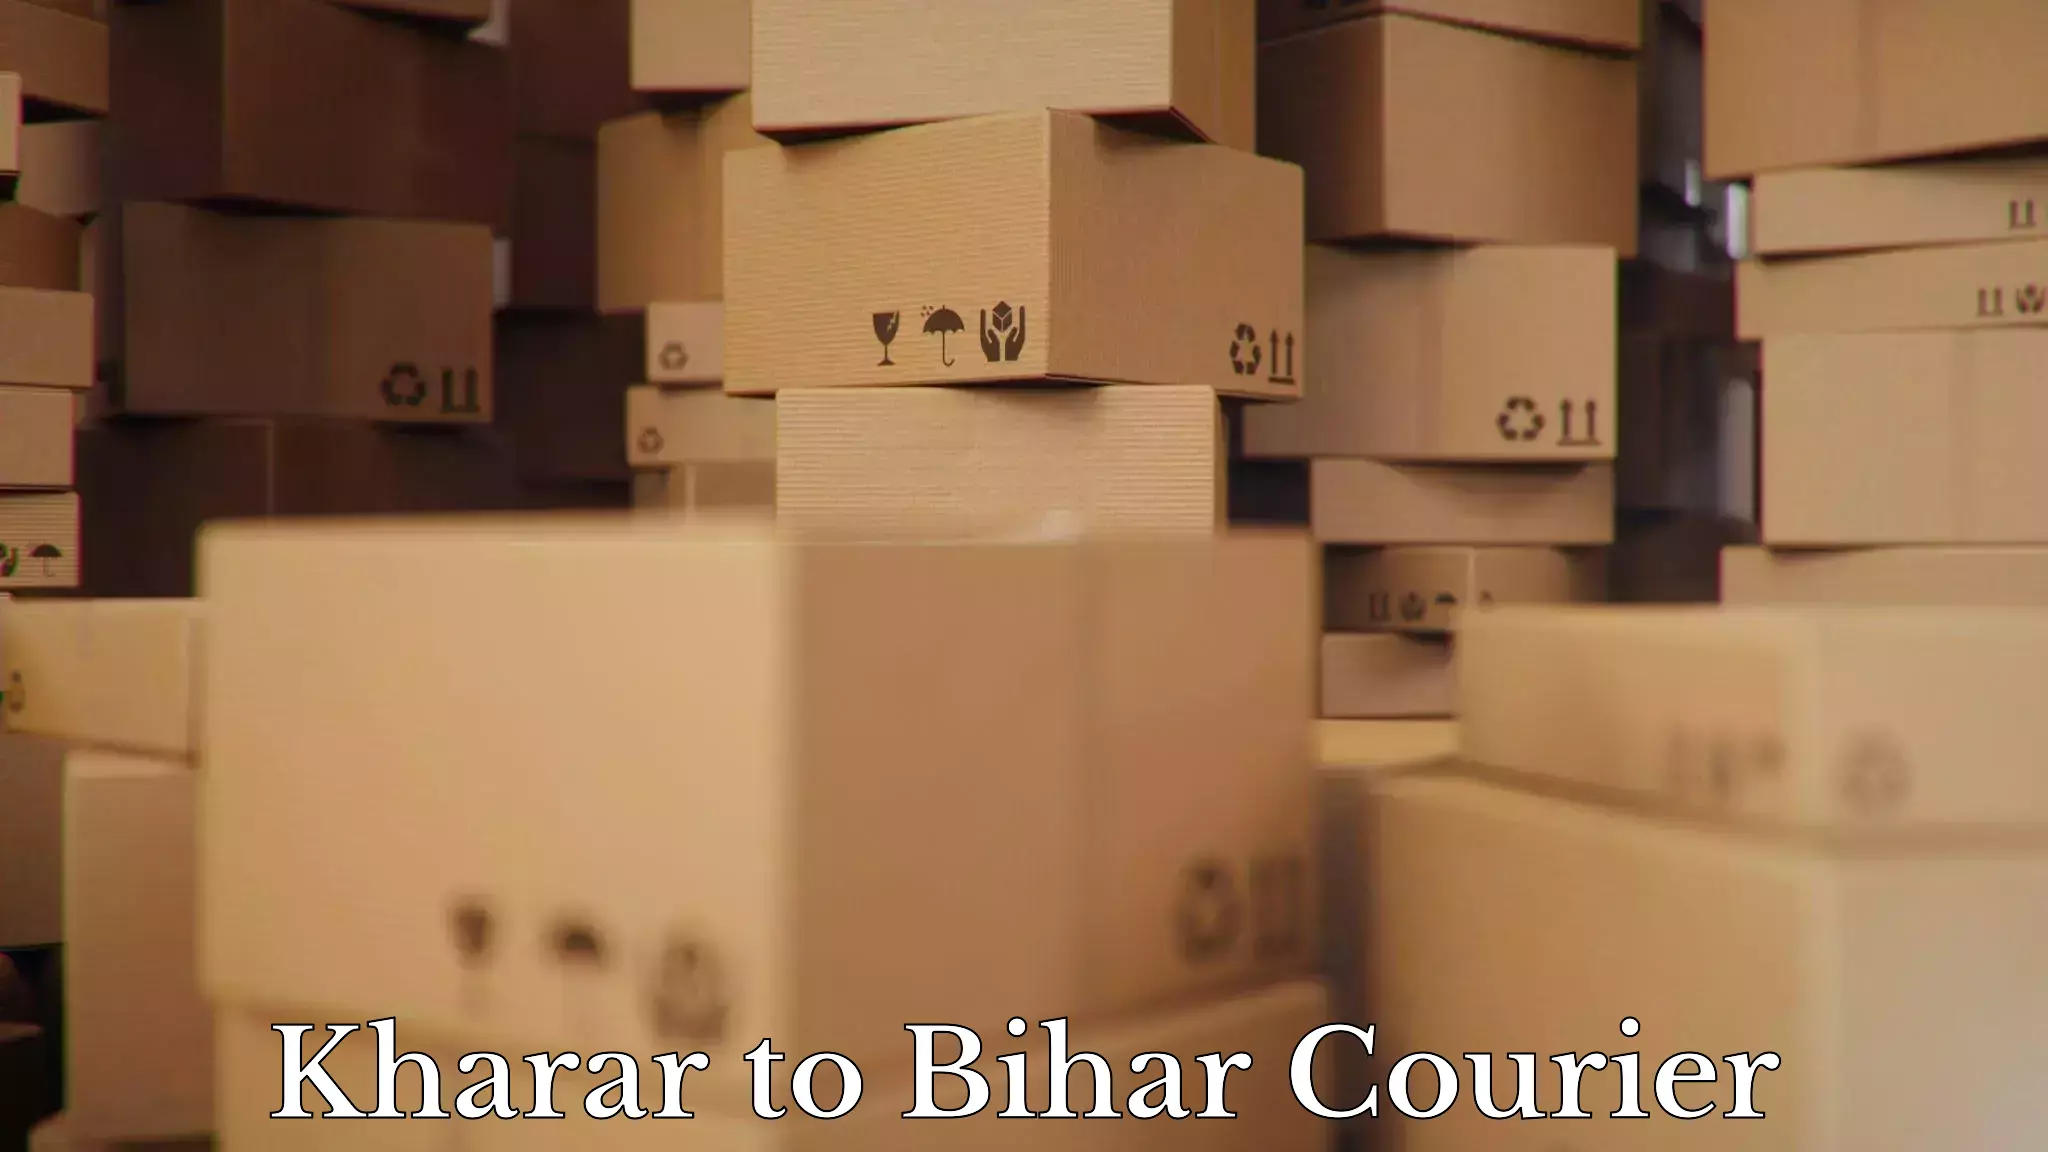 Door-to-door relocation services Kharar to Barh